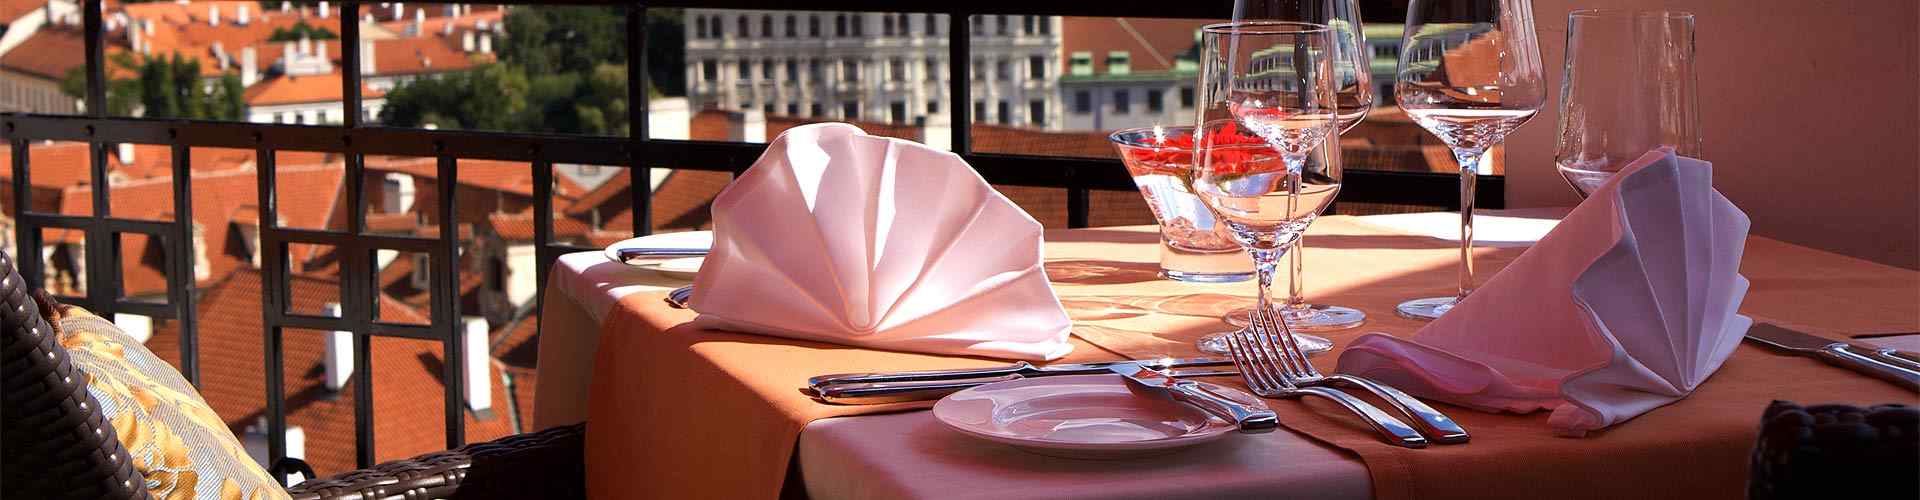 Restaurantes románticos con terraza en El Prat de Llobregat
          
          
